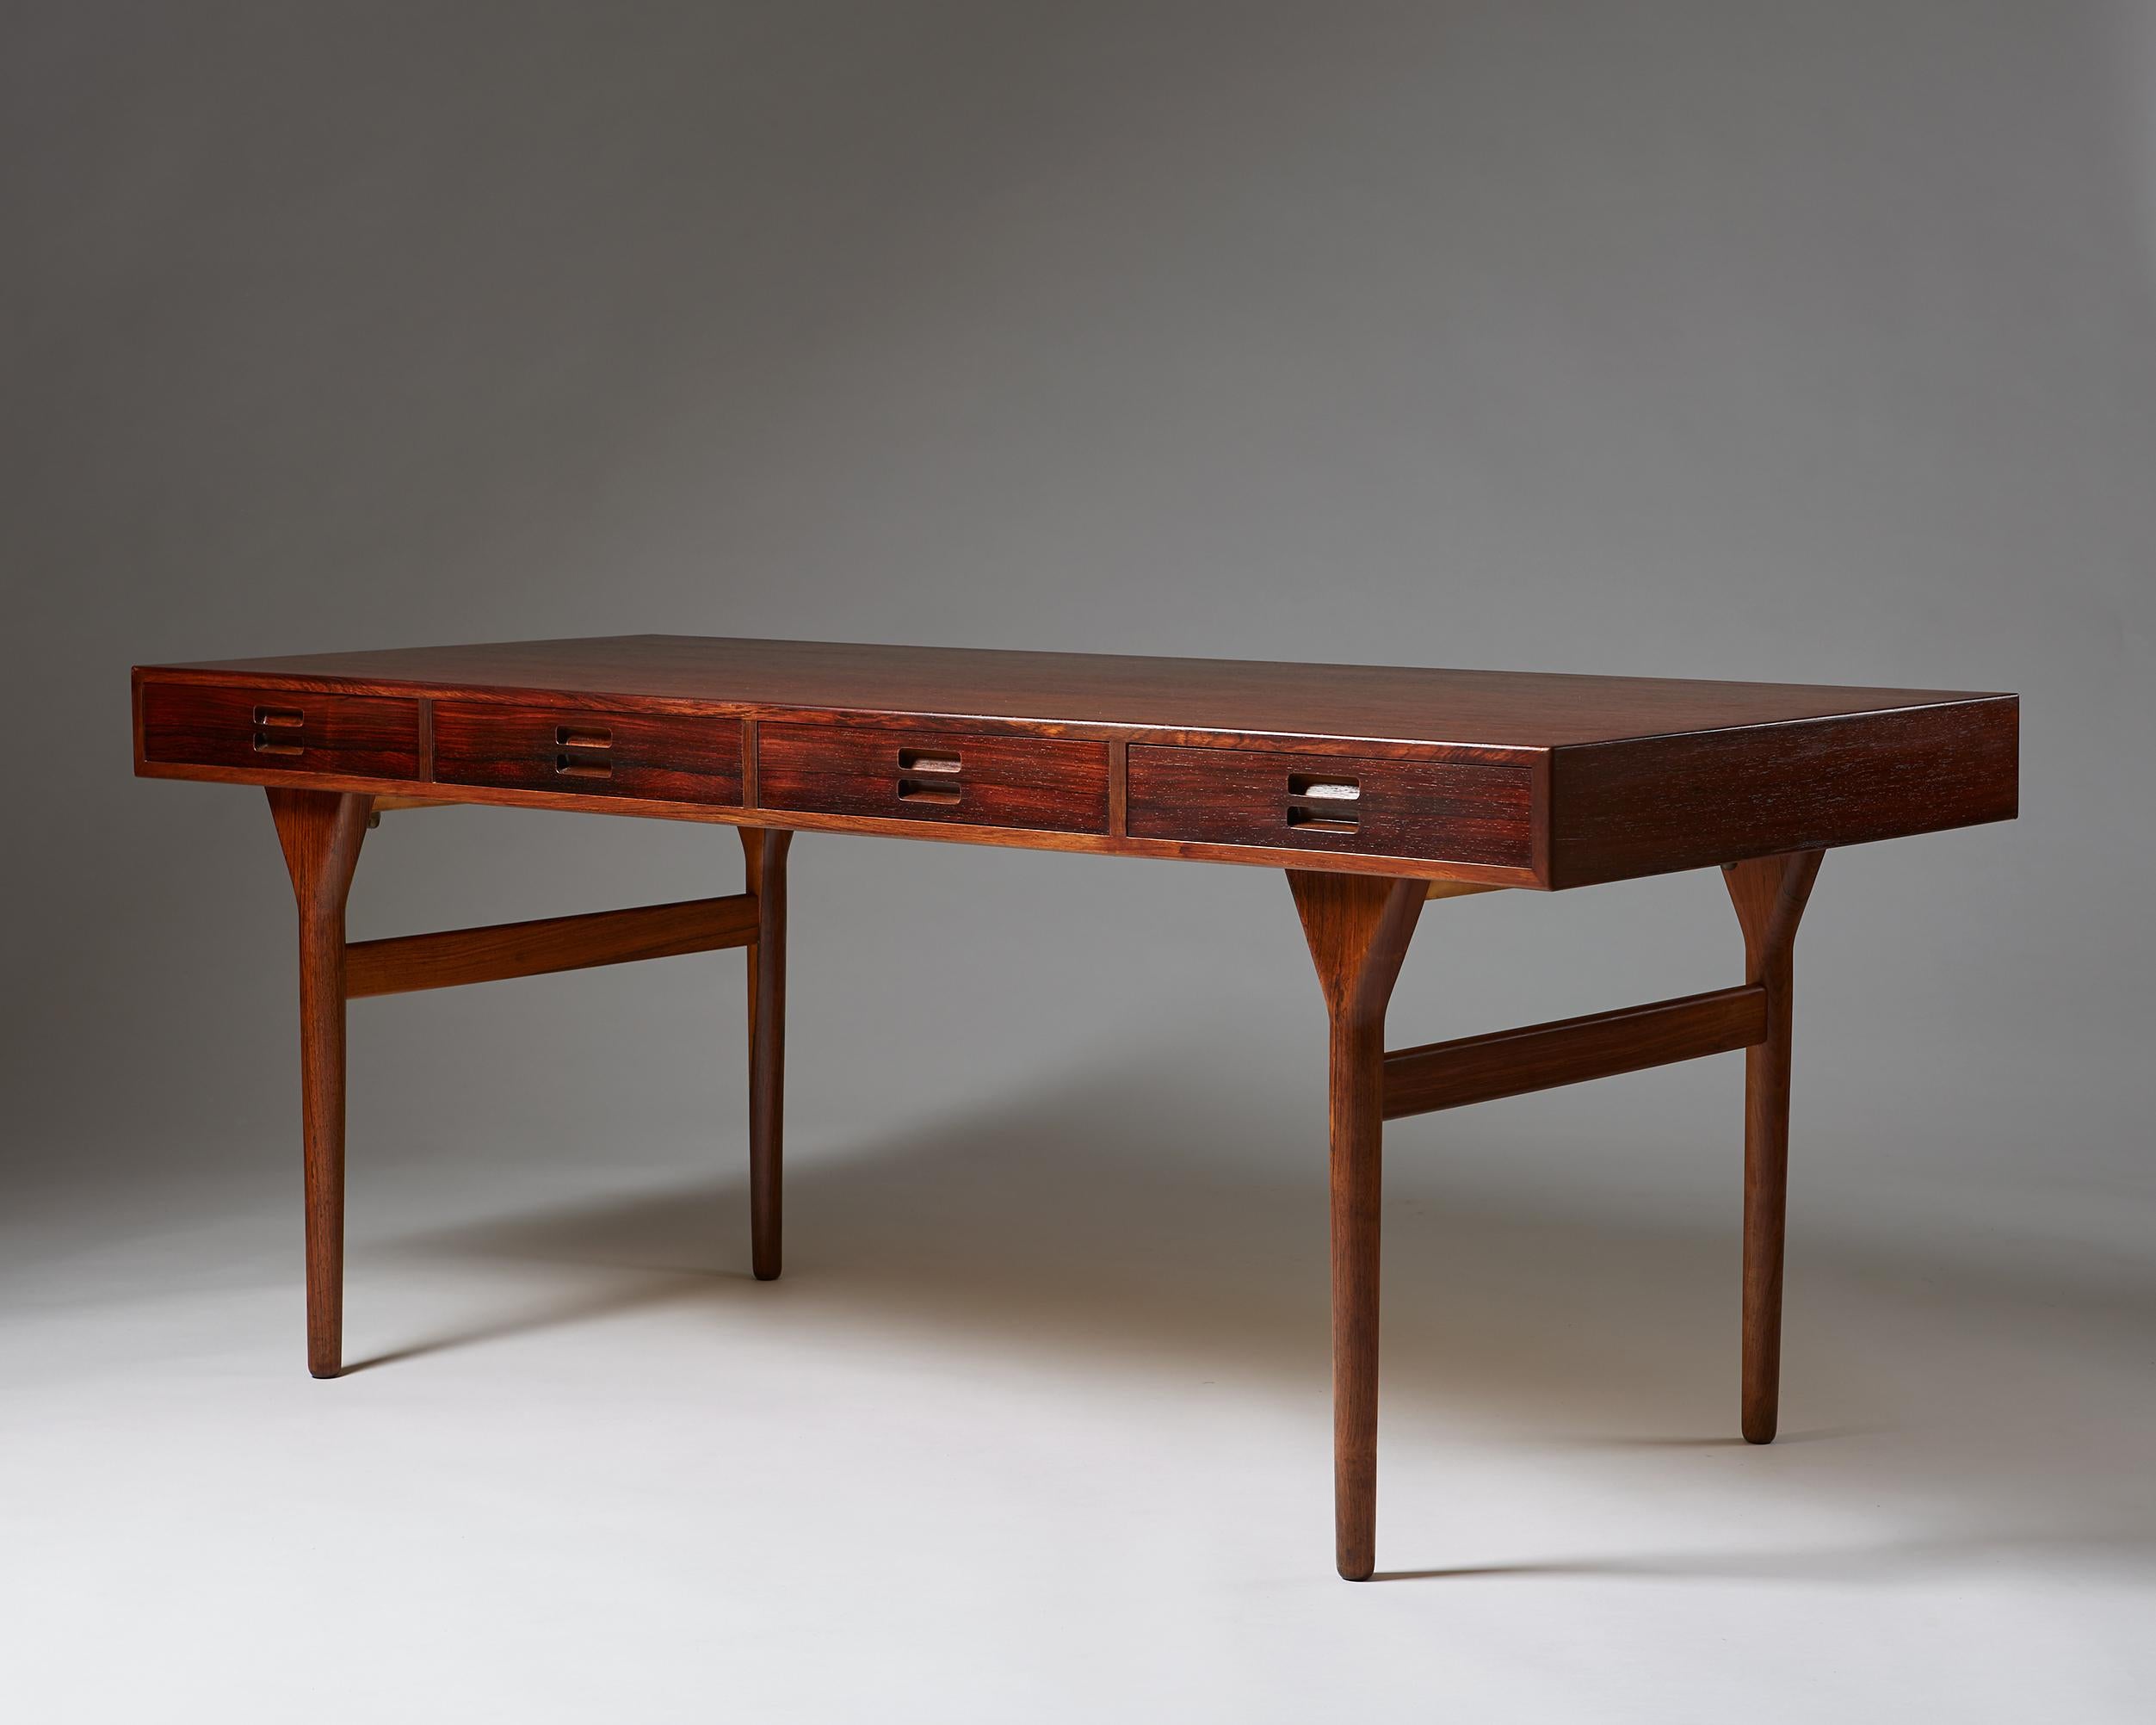 Desk designed by Nanna and Jörgen Ditzel for Sören Willadsen,
Denmark, 1955.
Teak.

Measures: H 72 cm/ 28 1/2